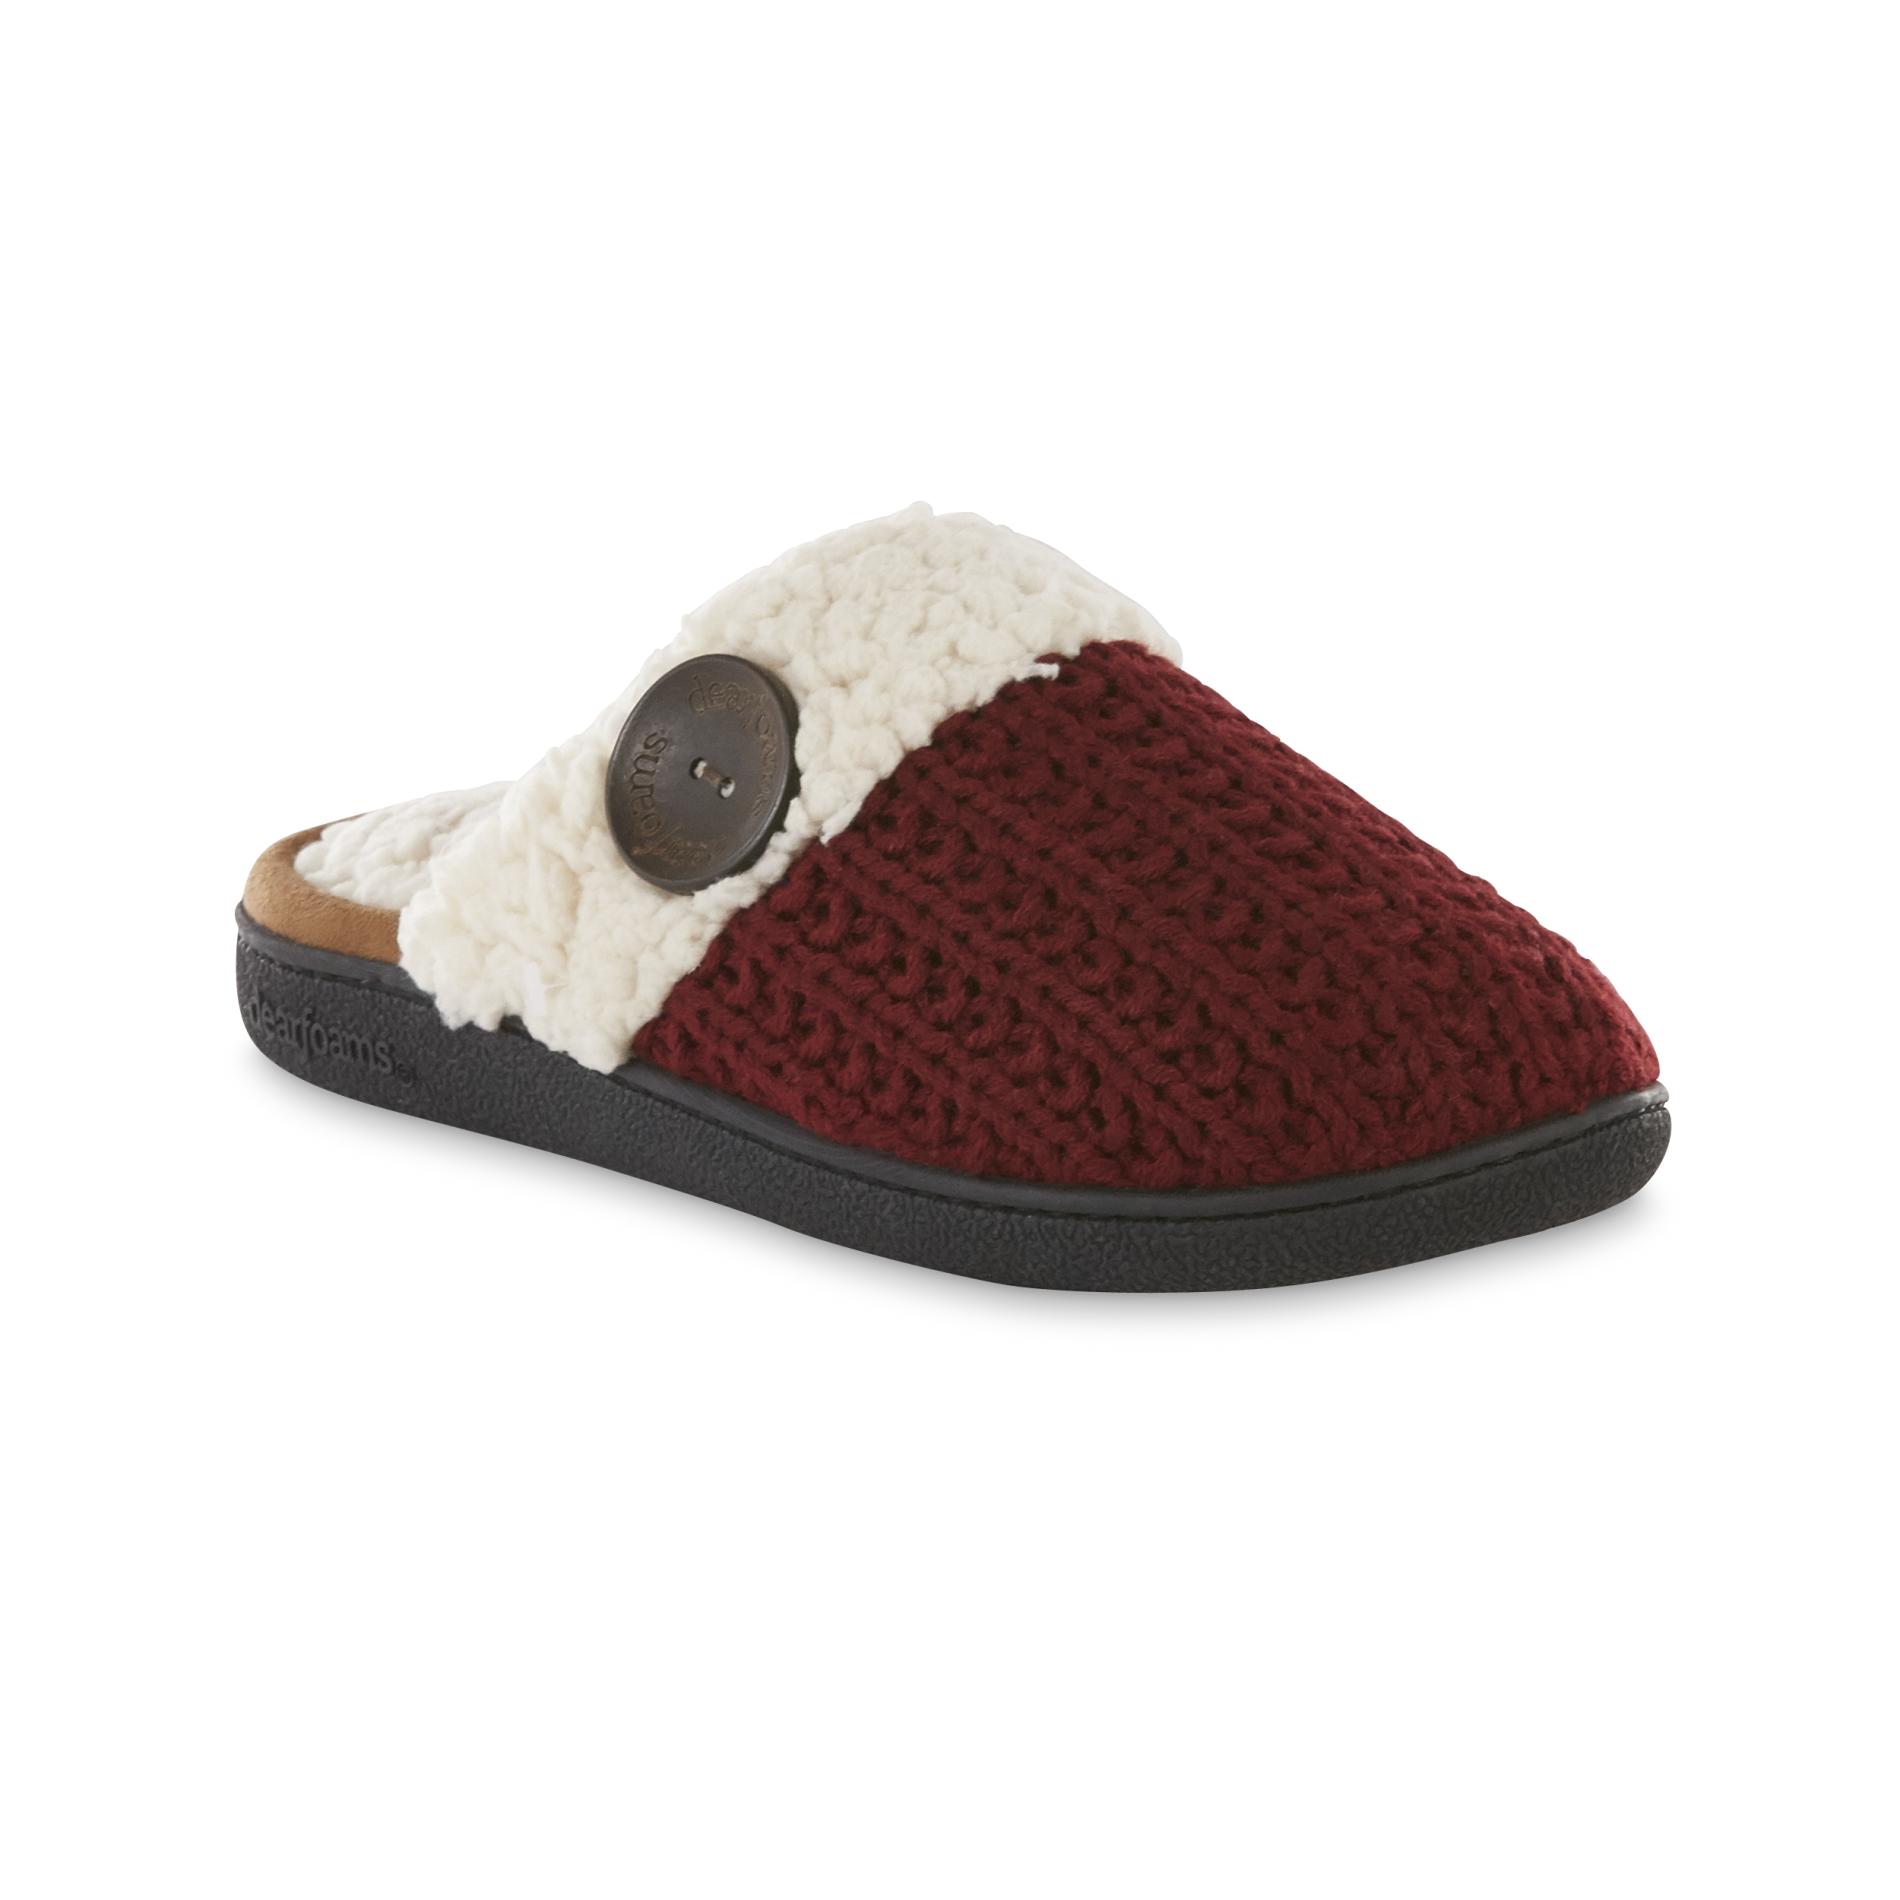 Dearfoams Women's Maroon/Cream Sweater Knit Clog Slipper